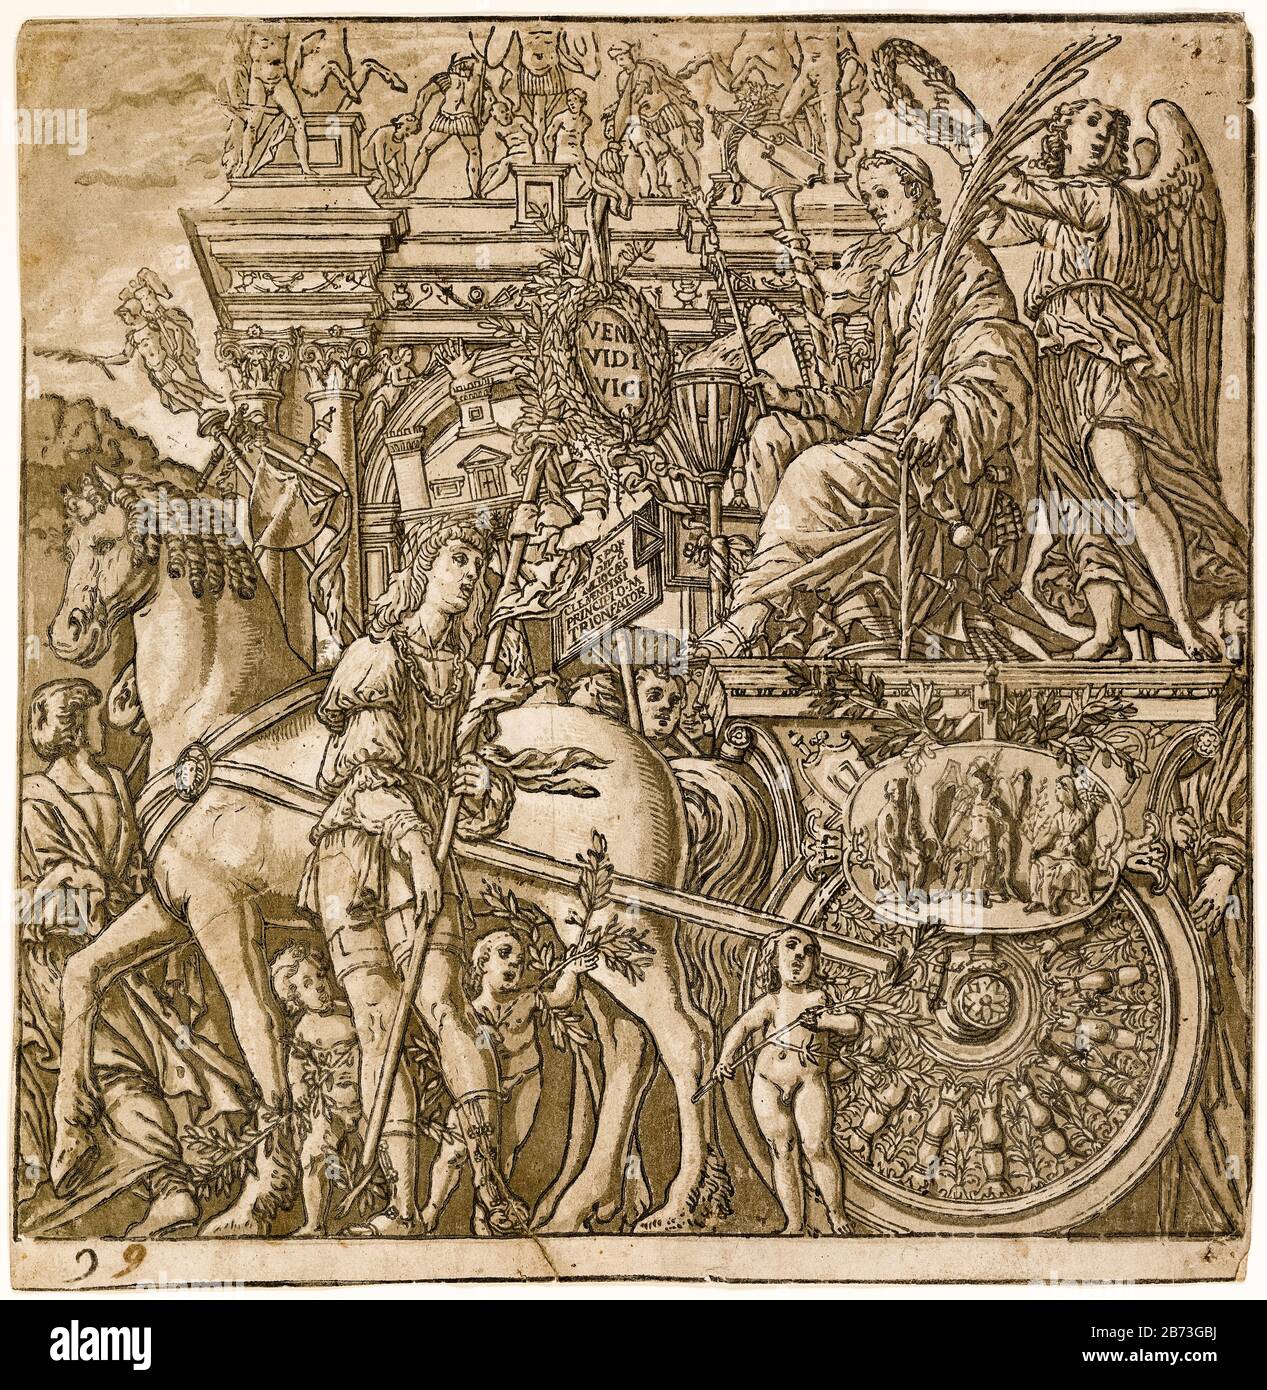 Julius César assis dans son char, de la série, Le Triumph de César, impression sur bois du XVIe siècle, par Andrea Andreani après Andrea Mantegna, 1599 Banque D'Images